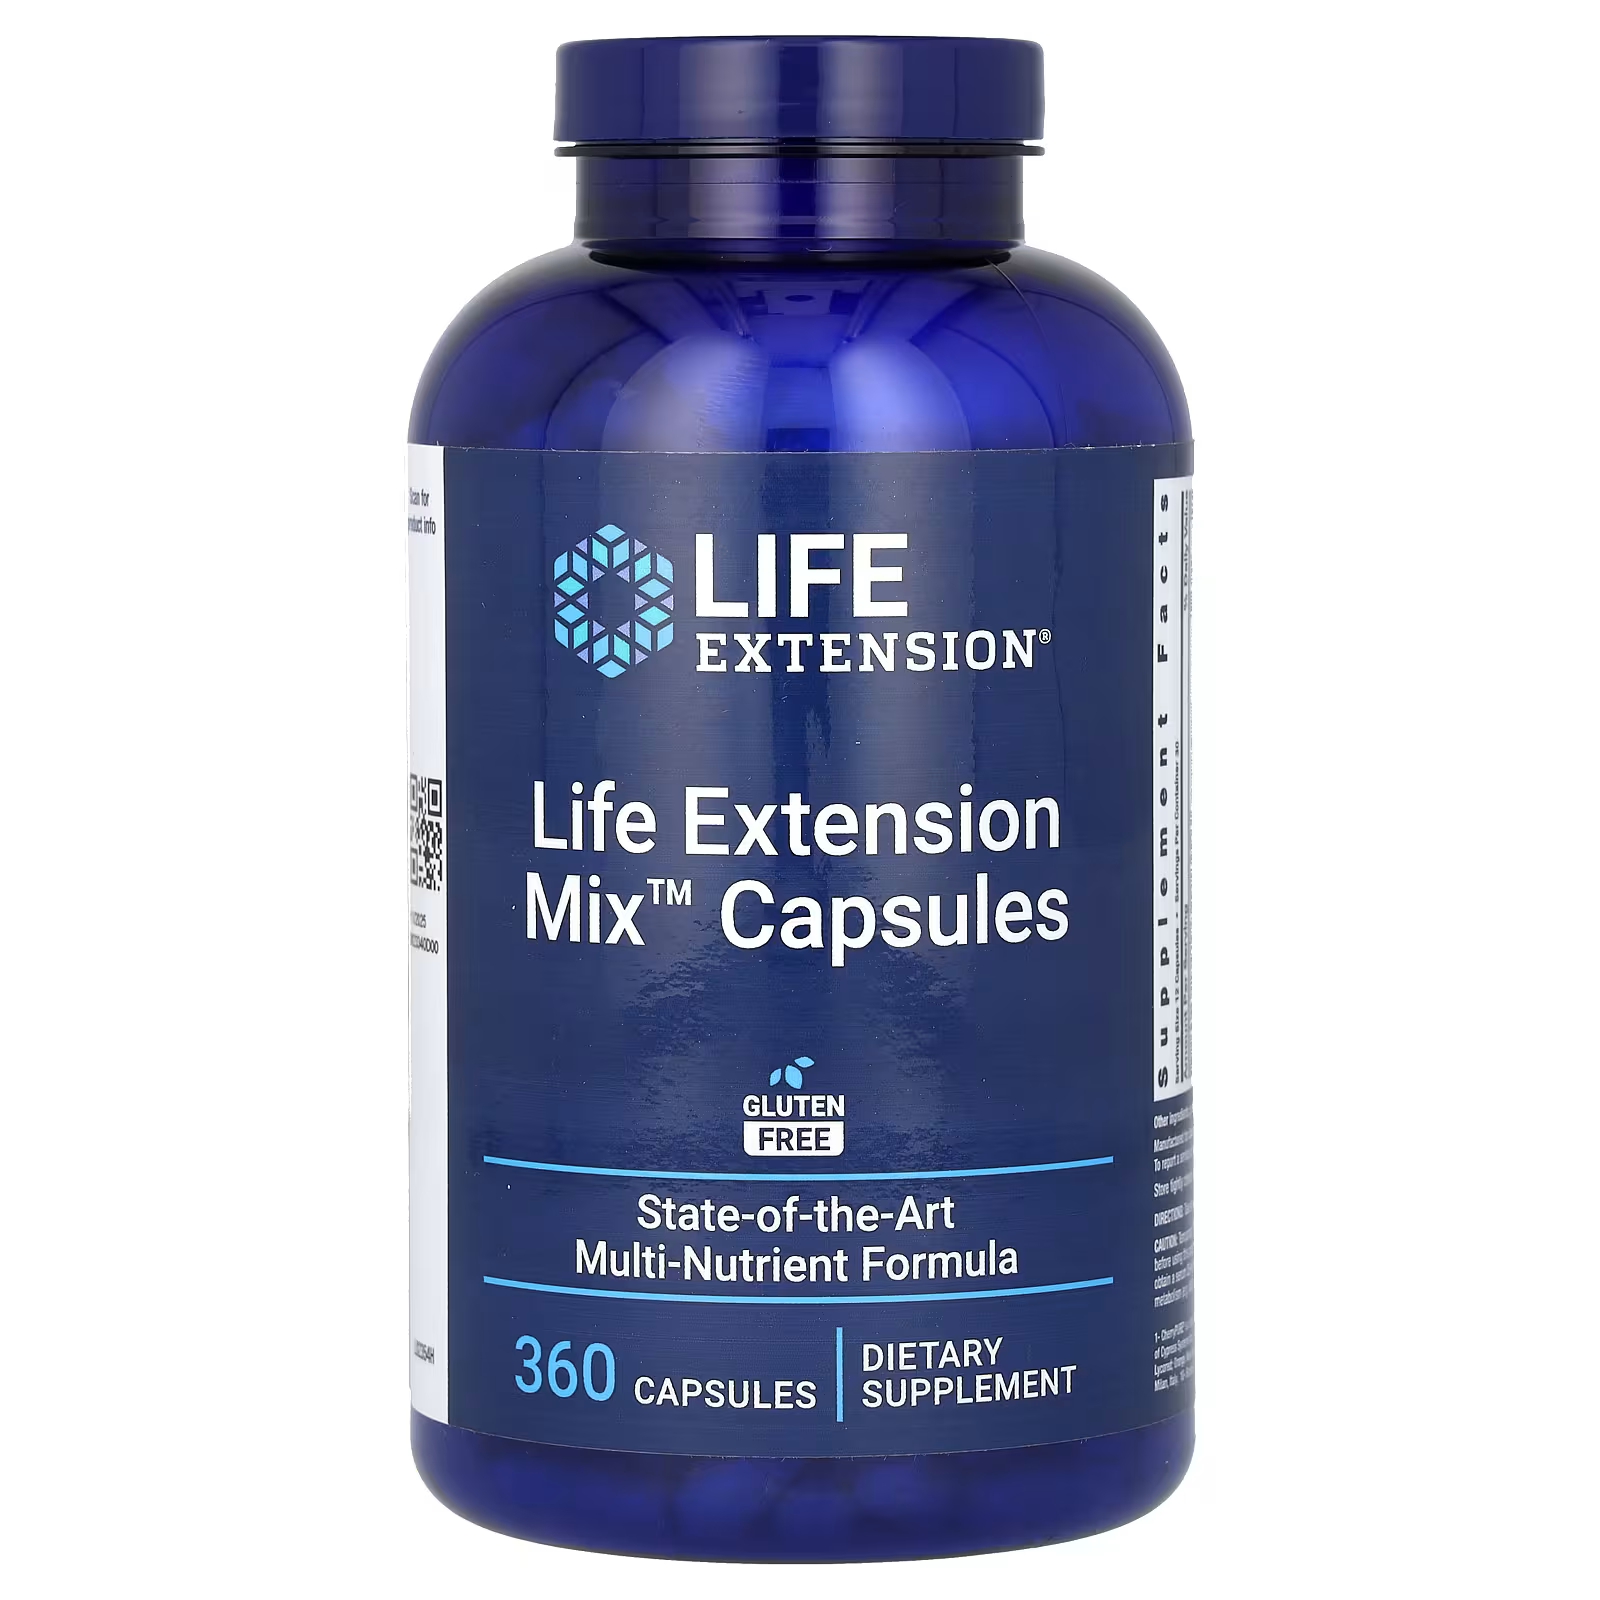 Пищевая добавка Life Extension Life Extension Mix, 360 капсул пищевая добавка life extension life extension mix 360 капсул